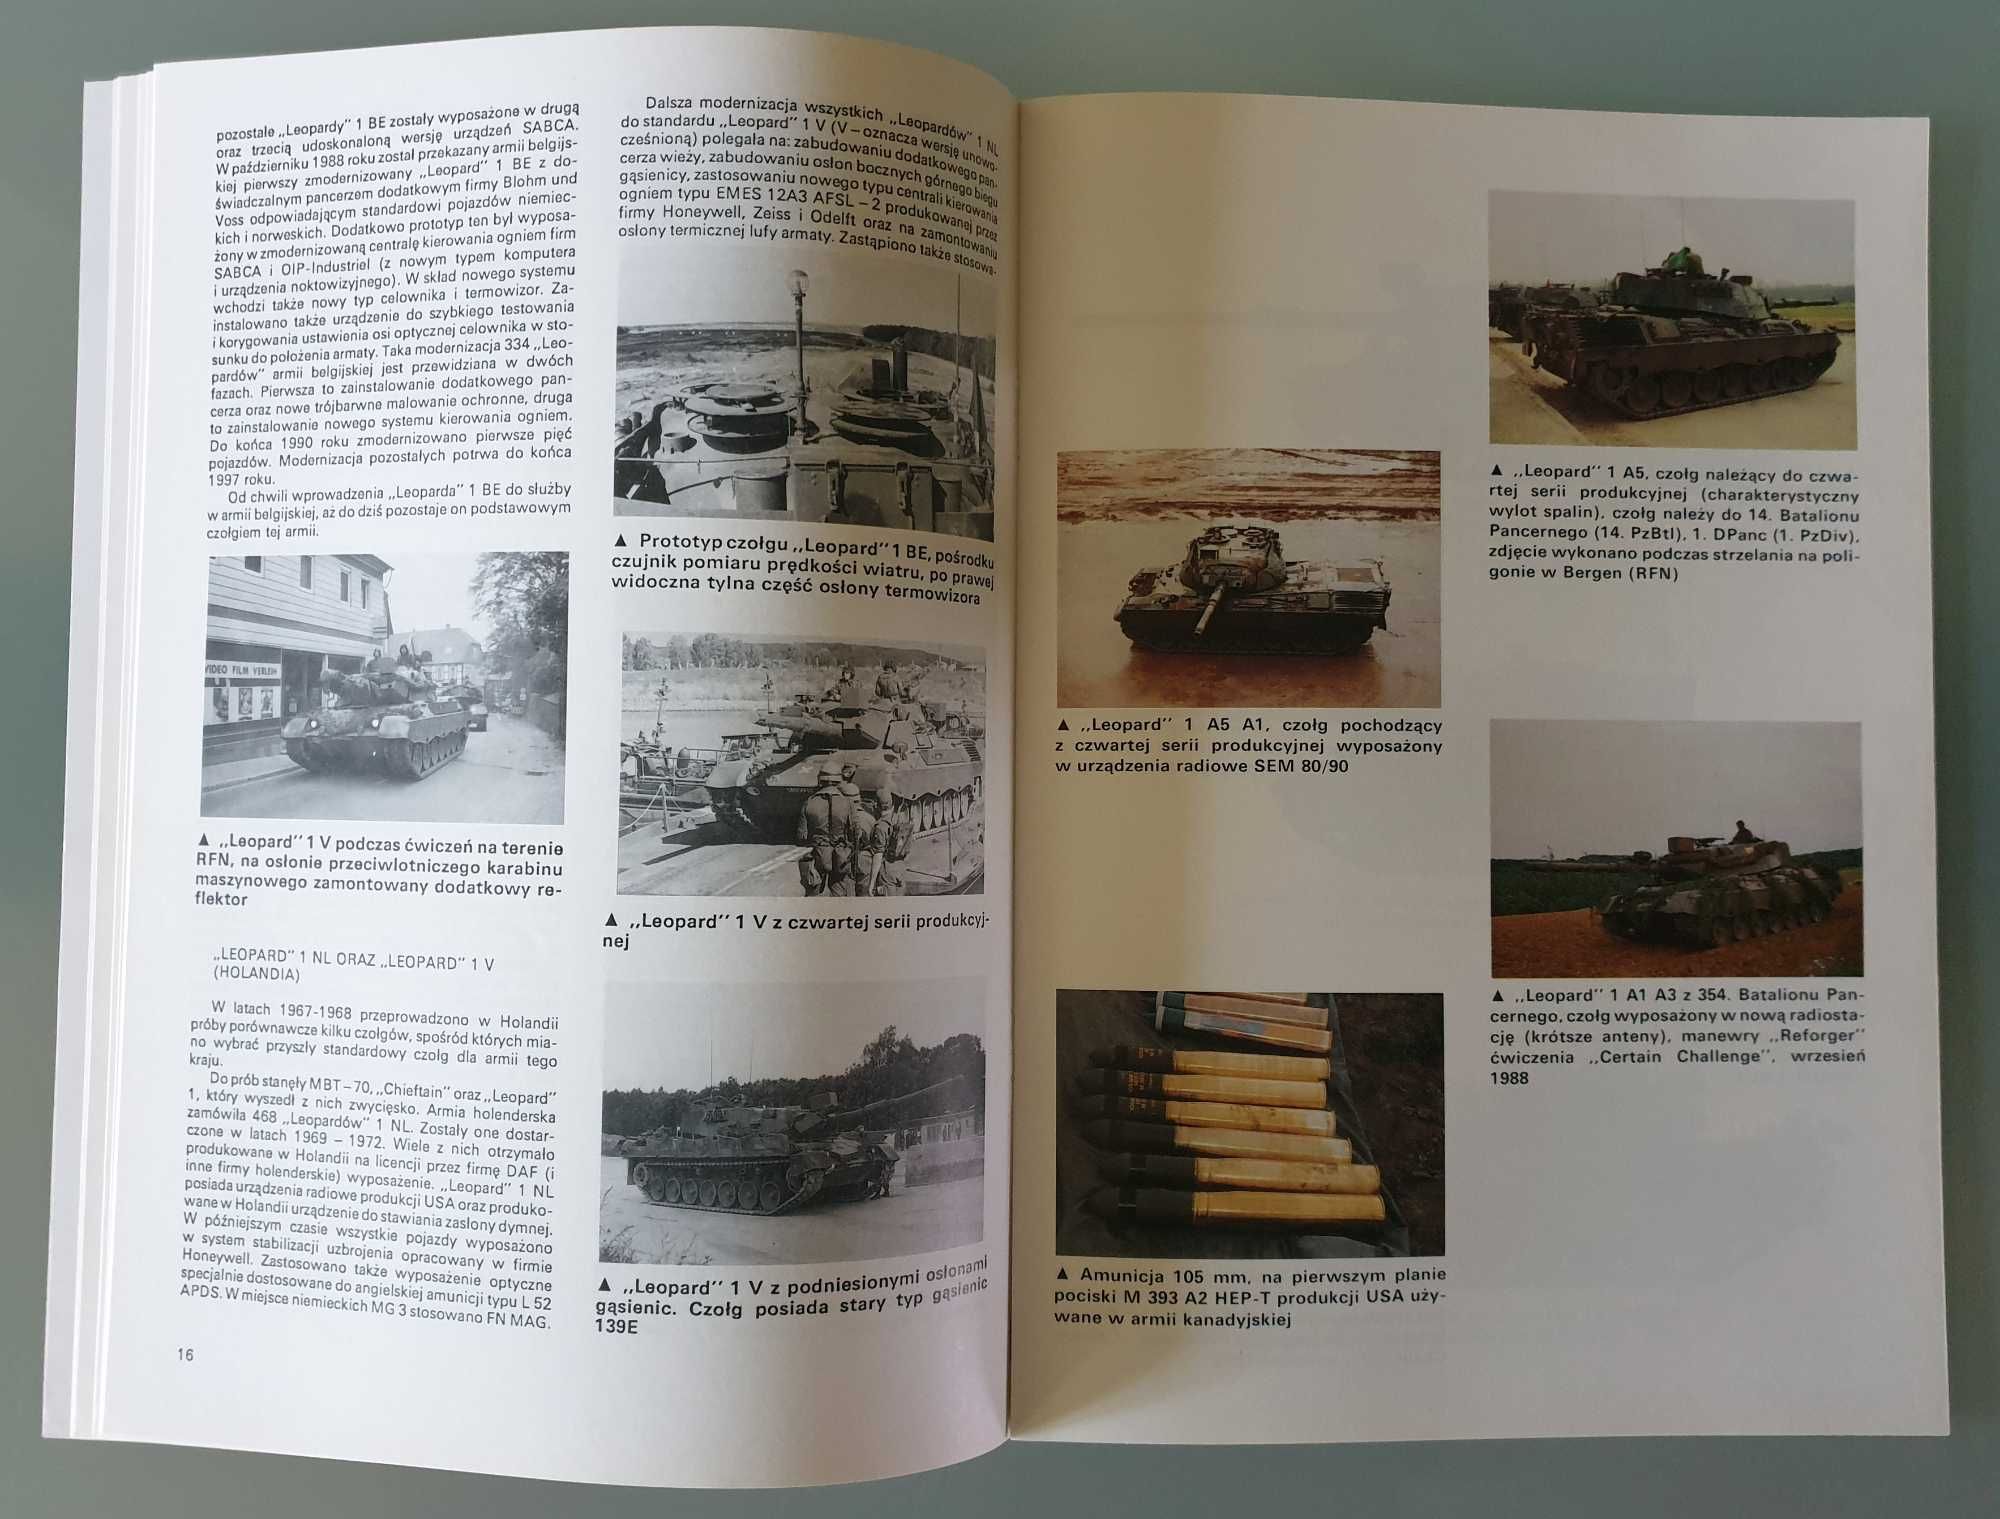 Militaria, monografia nr 9 - Leopard 1, Jercher, Trojca